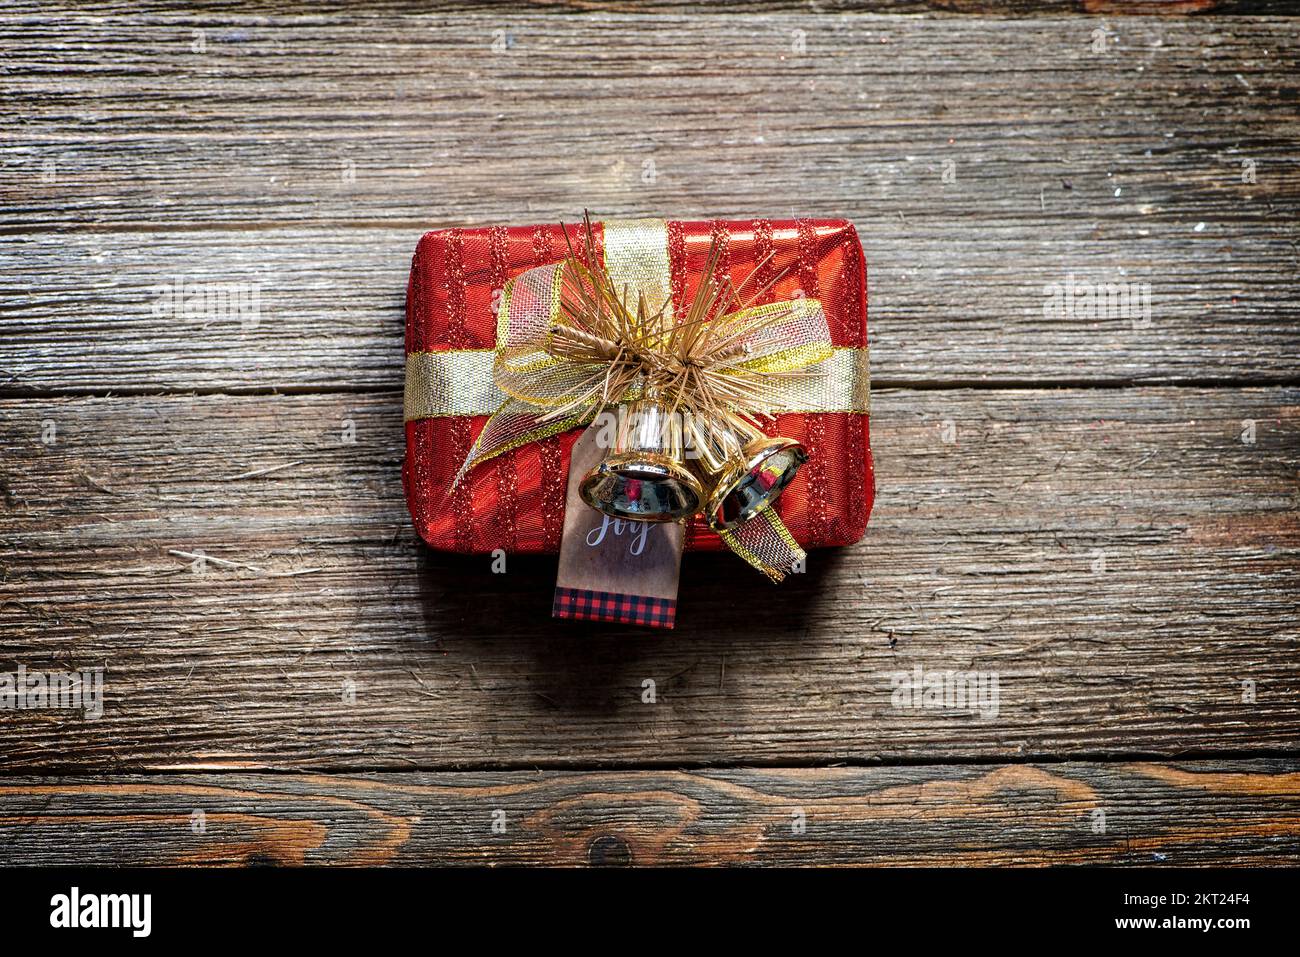 Piccola scatola regalo rossa e dorata su uno sfondo rustico in legno, in stile casale. Foto Stock